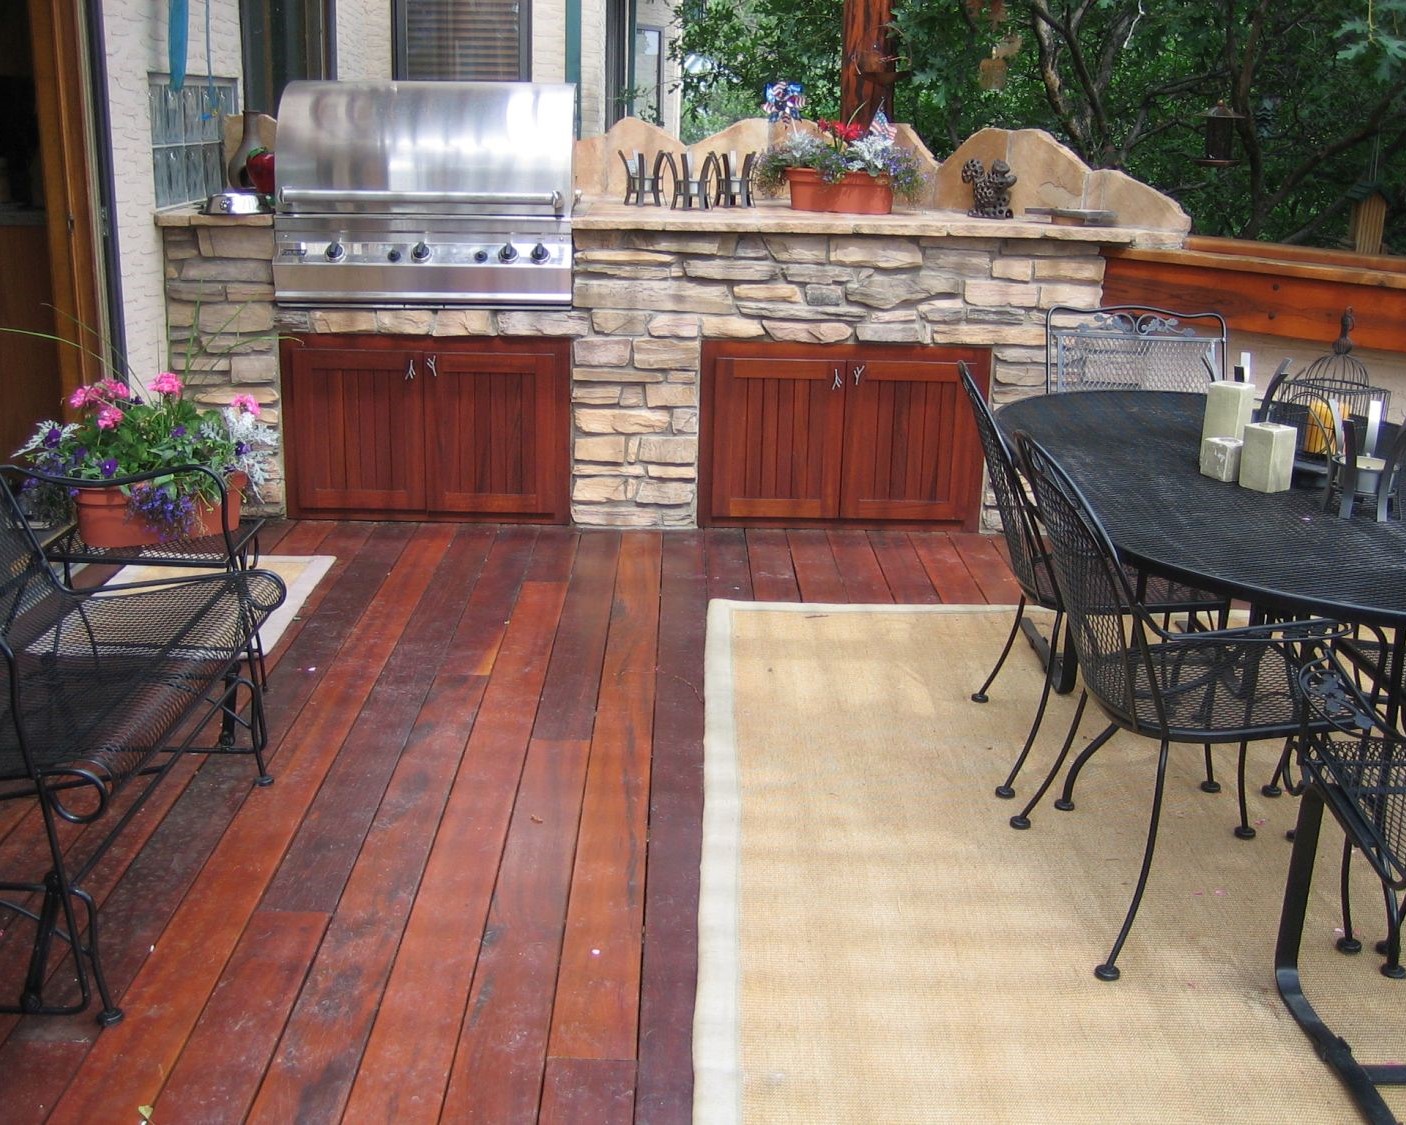 Hardwood deck with custom built outdoor cooking area.